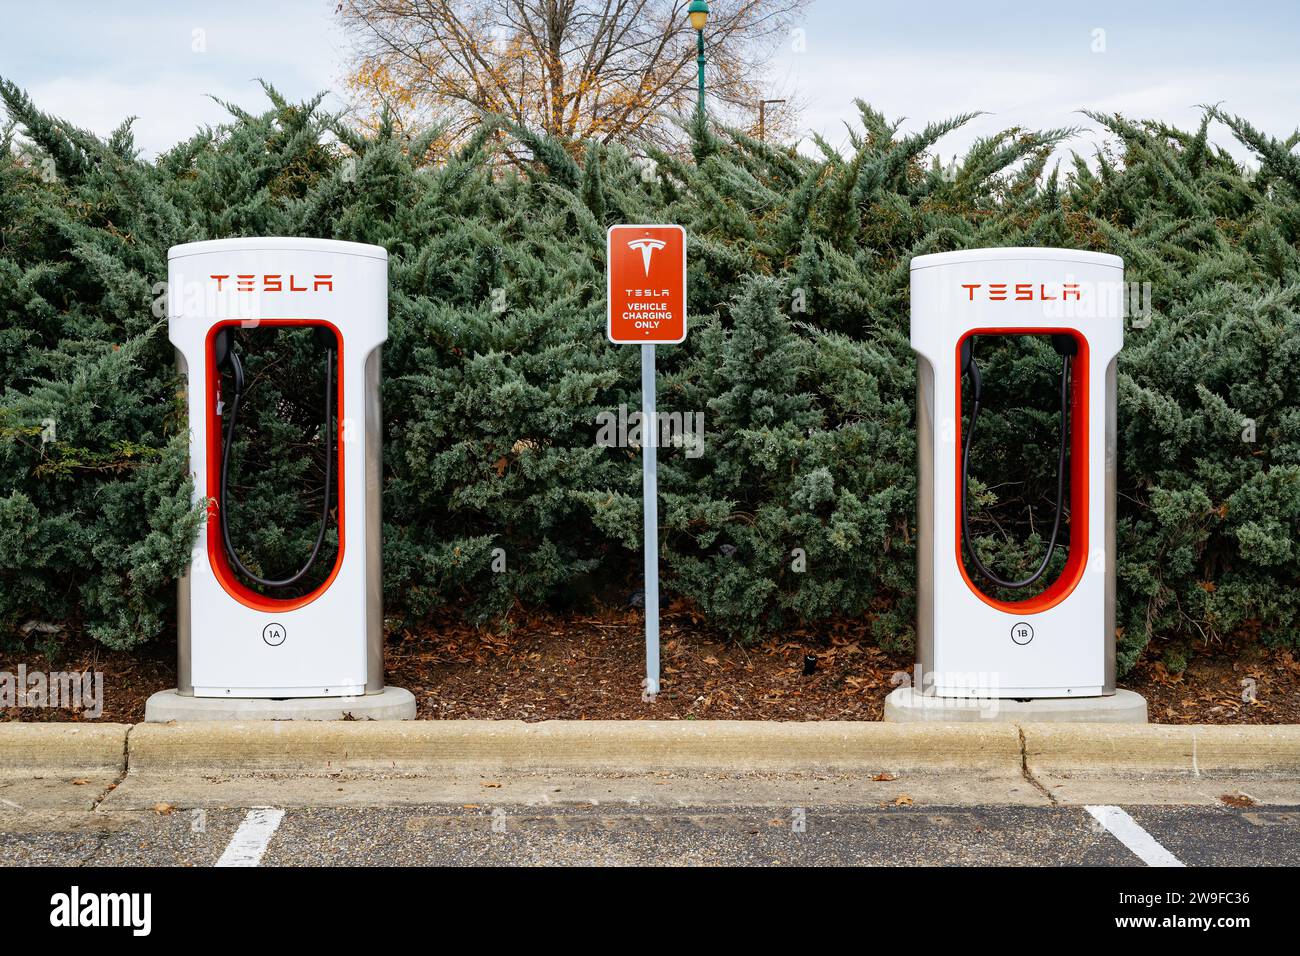 Tesla Elektroauto-Ladestationen für umweltfreundliche Autos auf einem Parkplatz in einem Einkaufszentrum in Montgomery Alabama, USA. Stockfoto